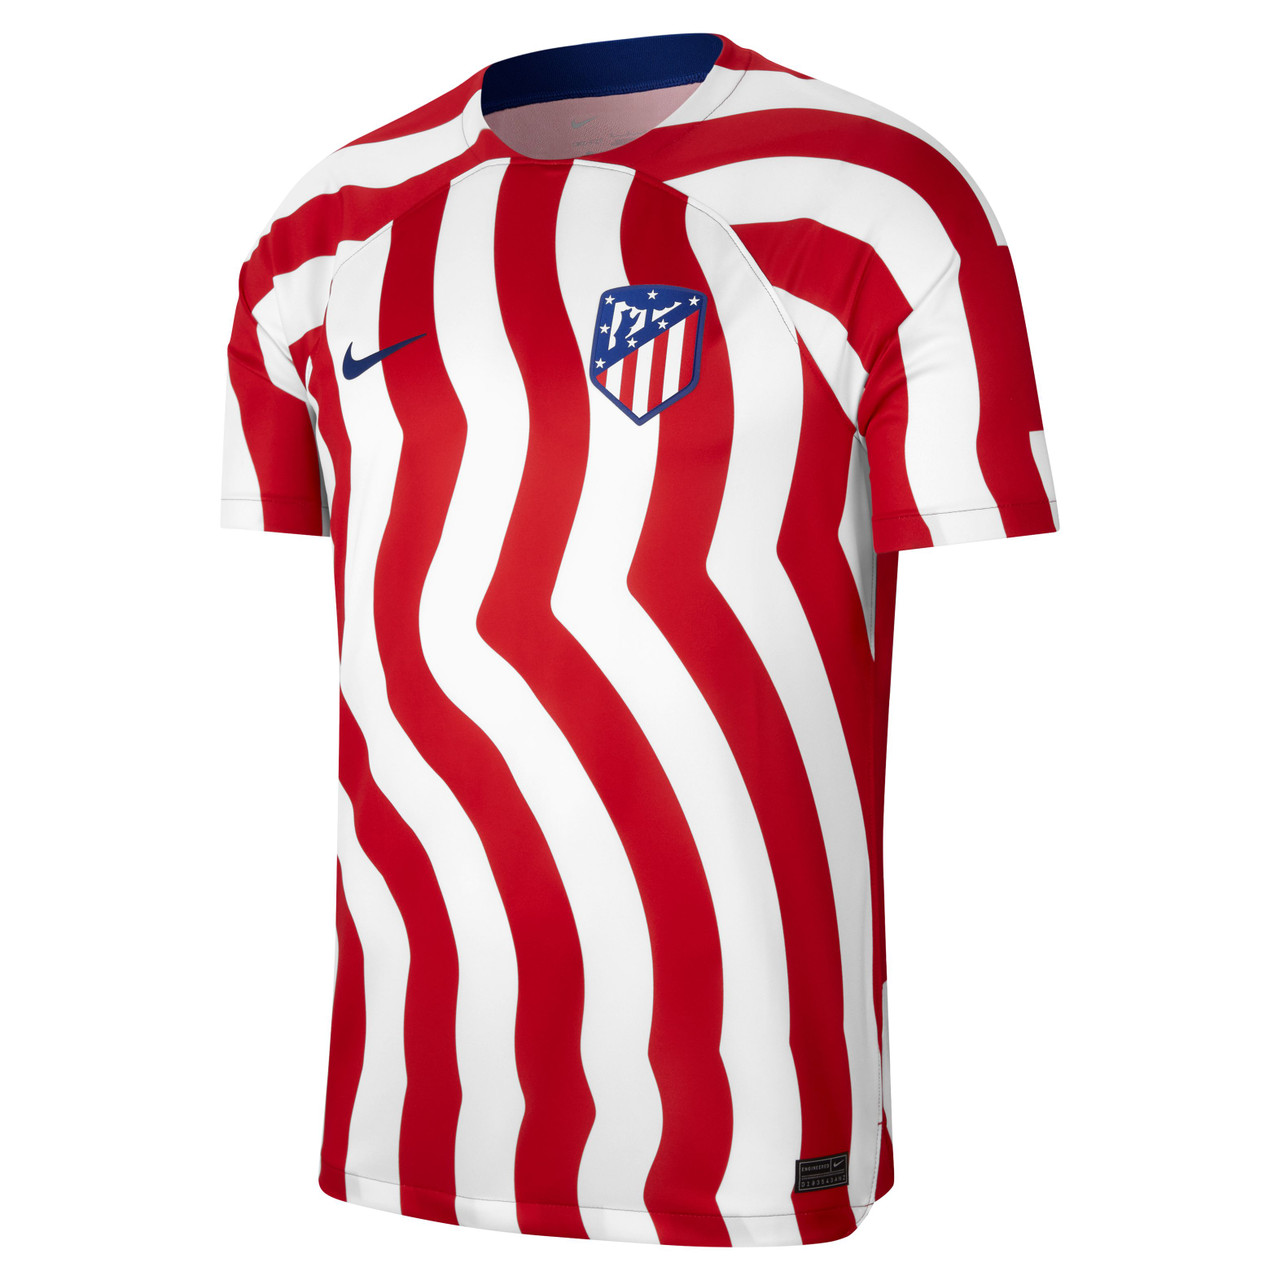 Atlético Madrid AWF Men's Nike Football Jacket